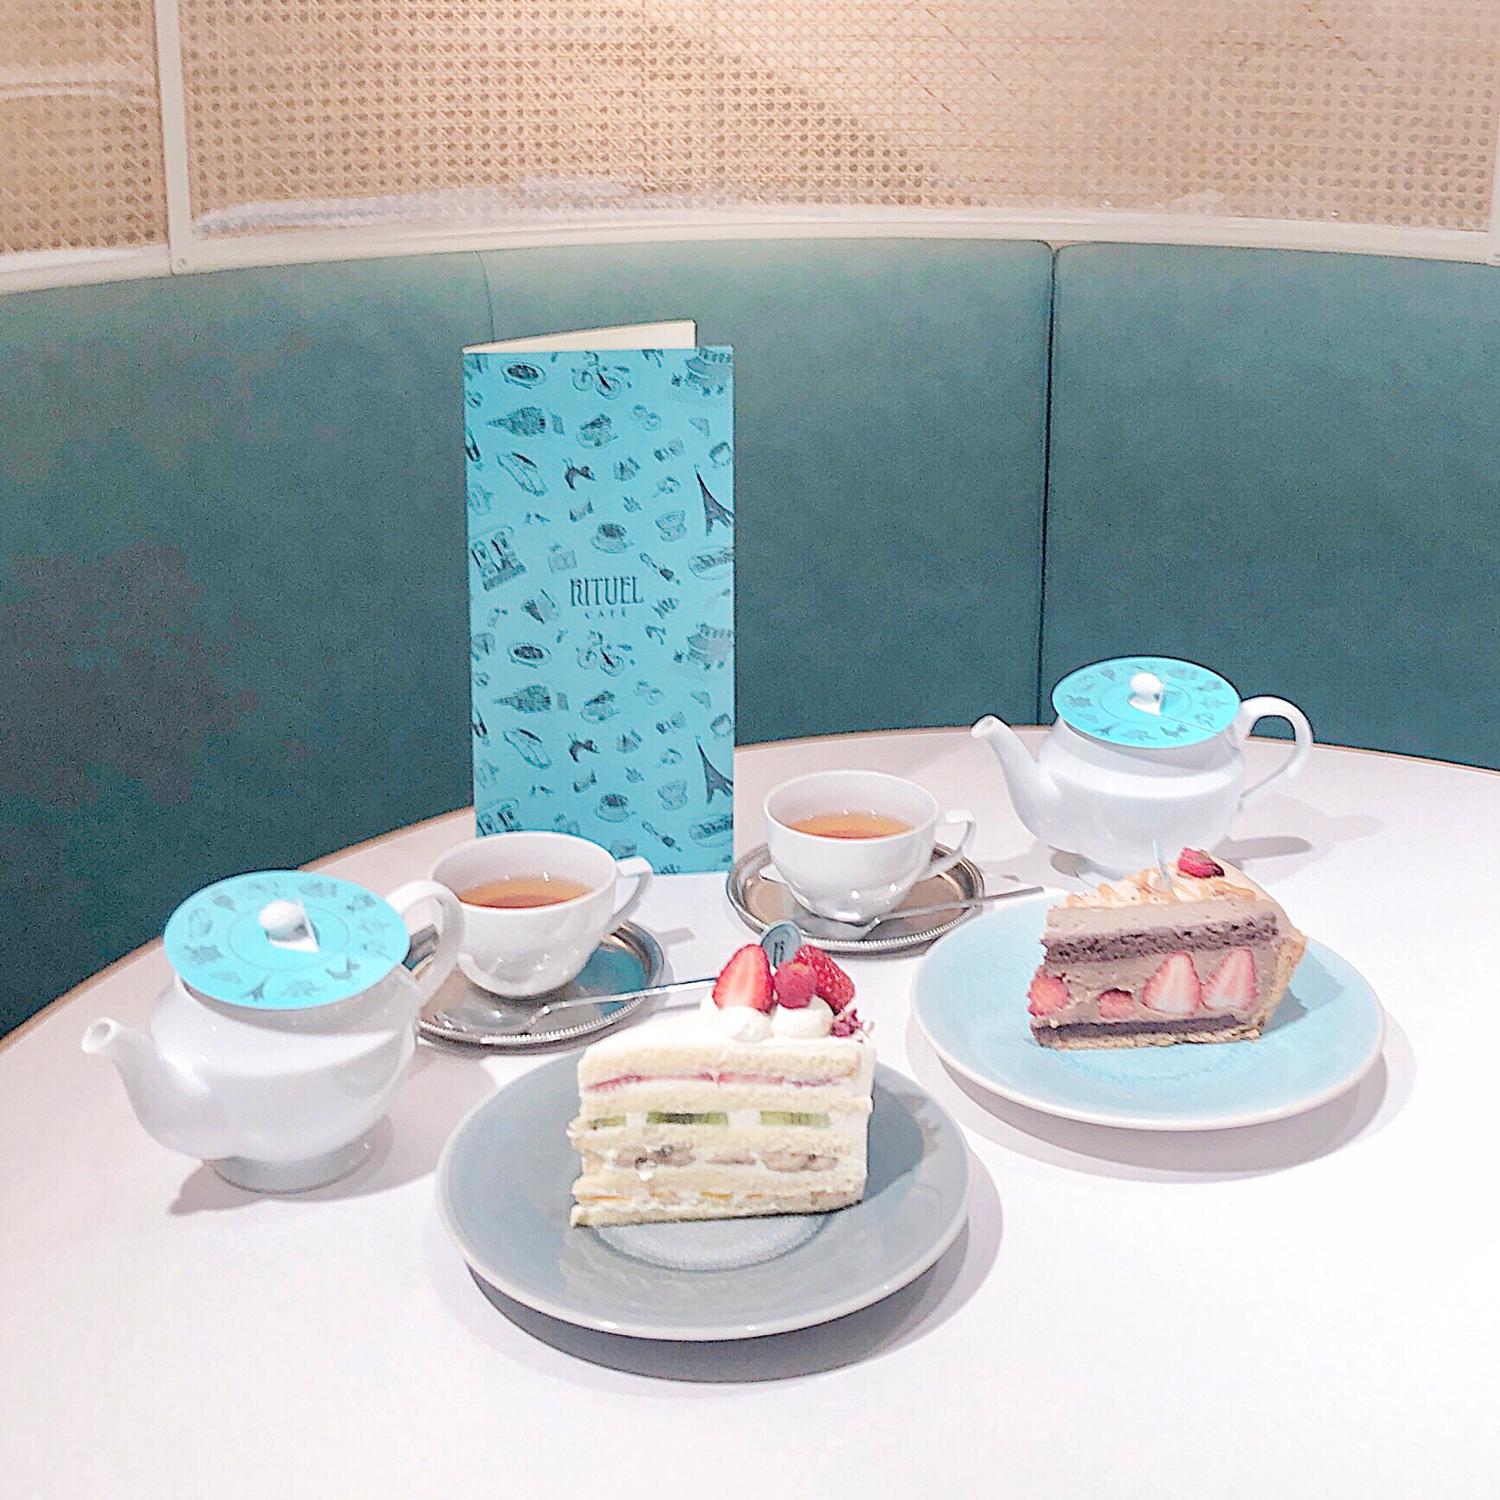 ティファニーブルーの店内が可愛い 新宿 Rituel Cafe Yu カフェ男子が投稿したフォトブック Sharee